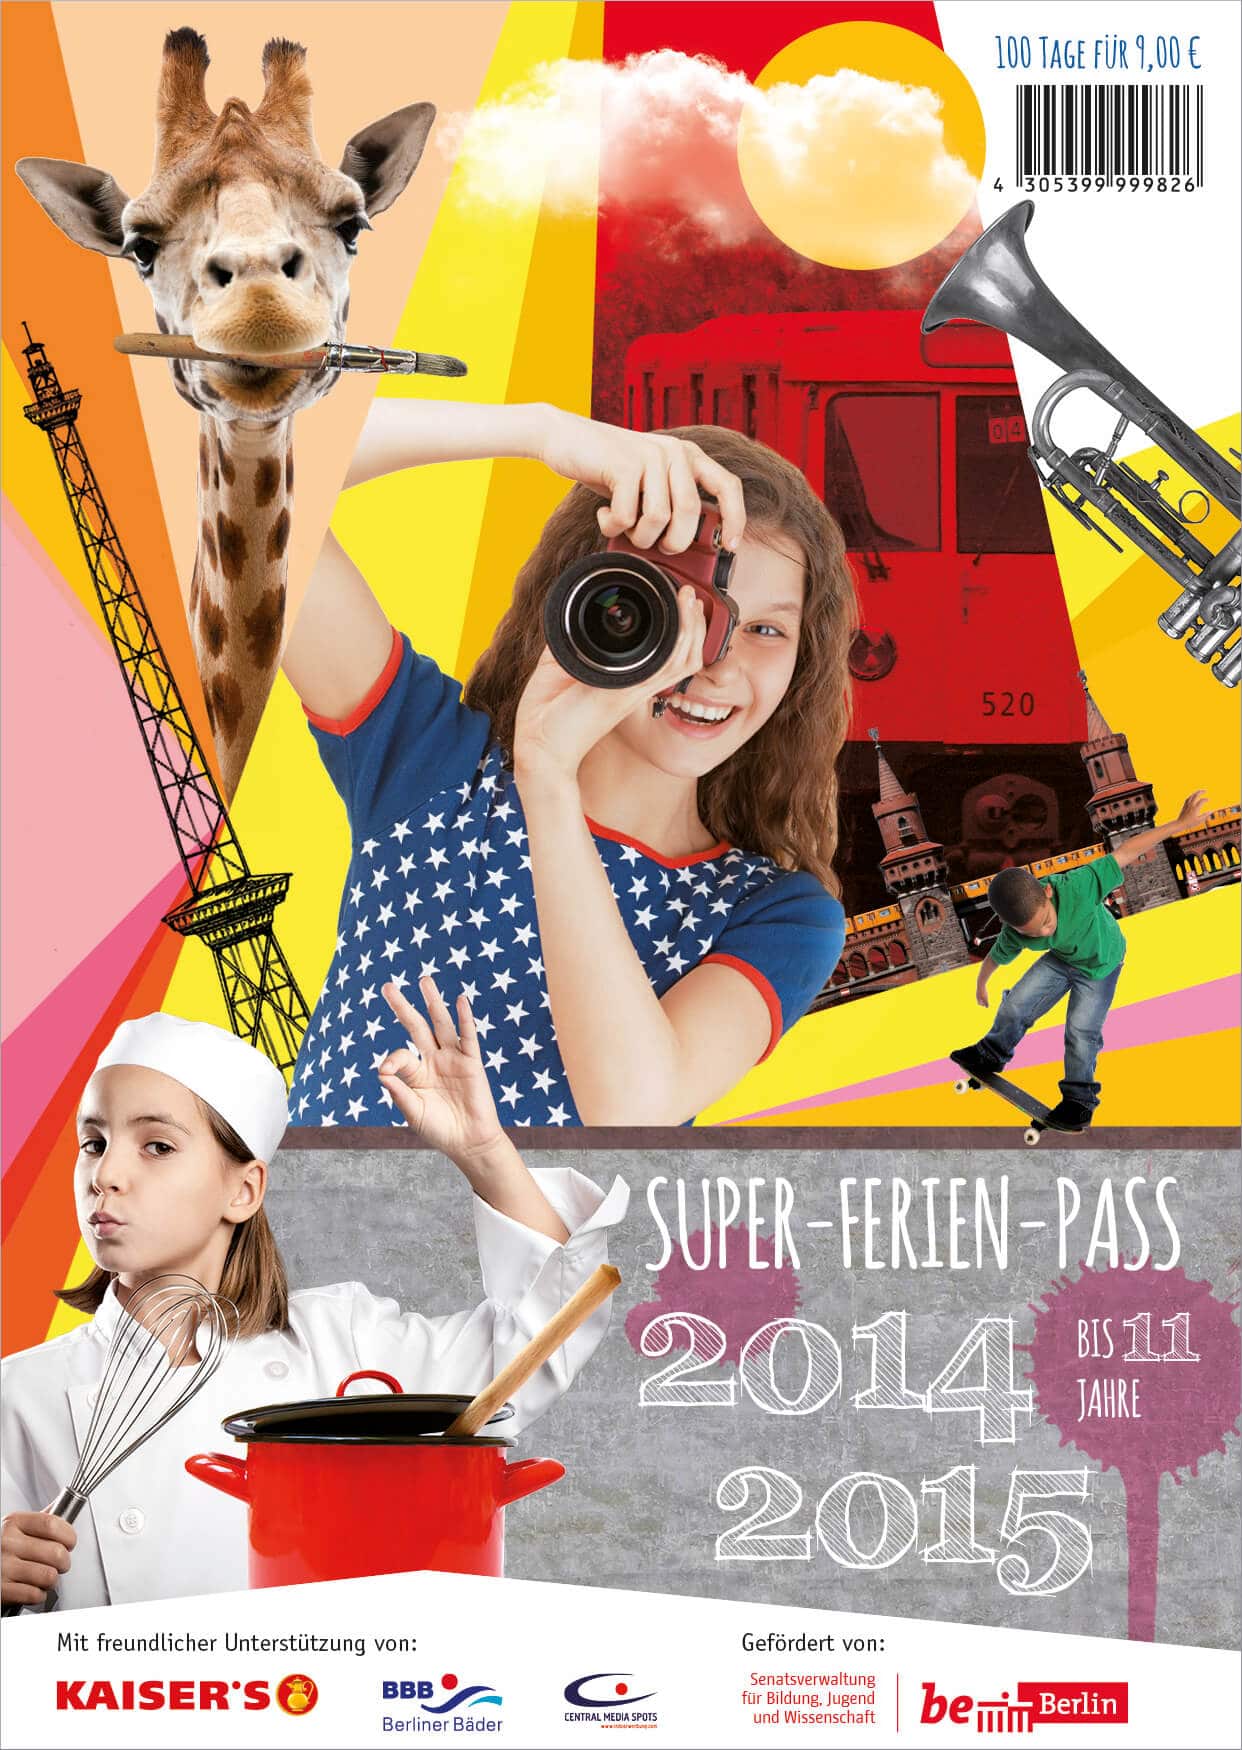 Der neue Super-Ferien-Pass 2014/15 ist da.